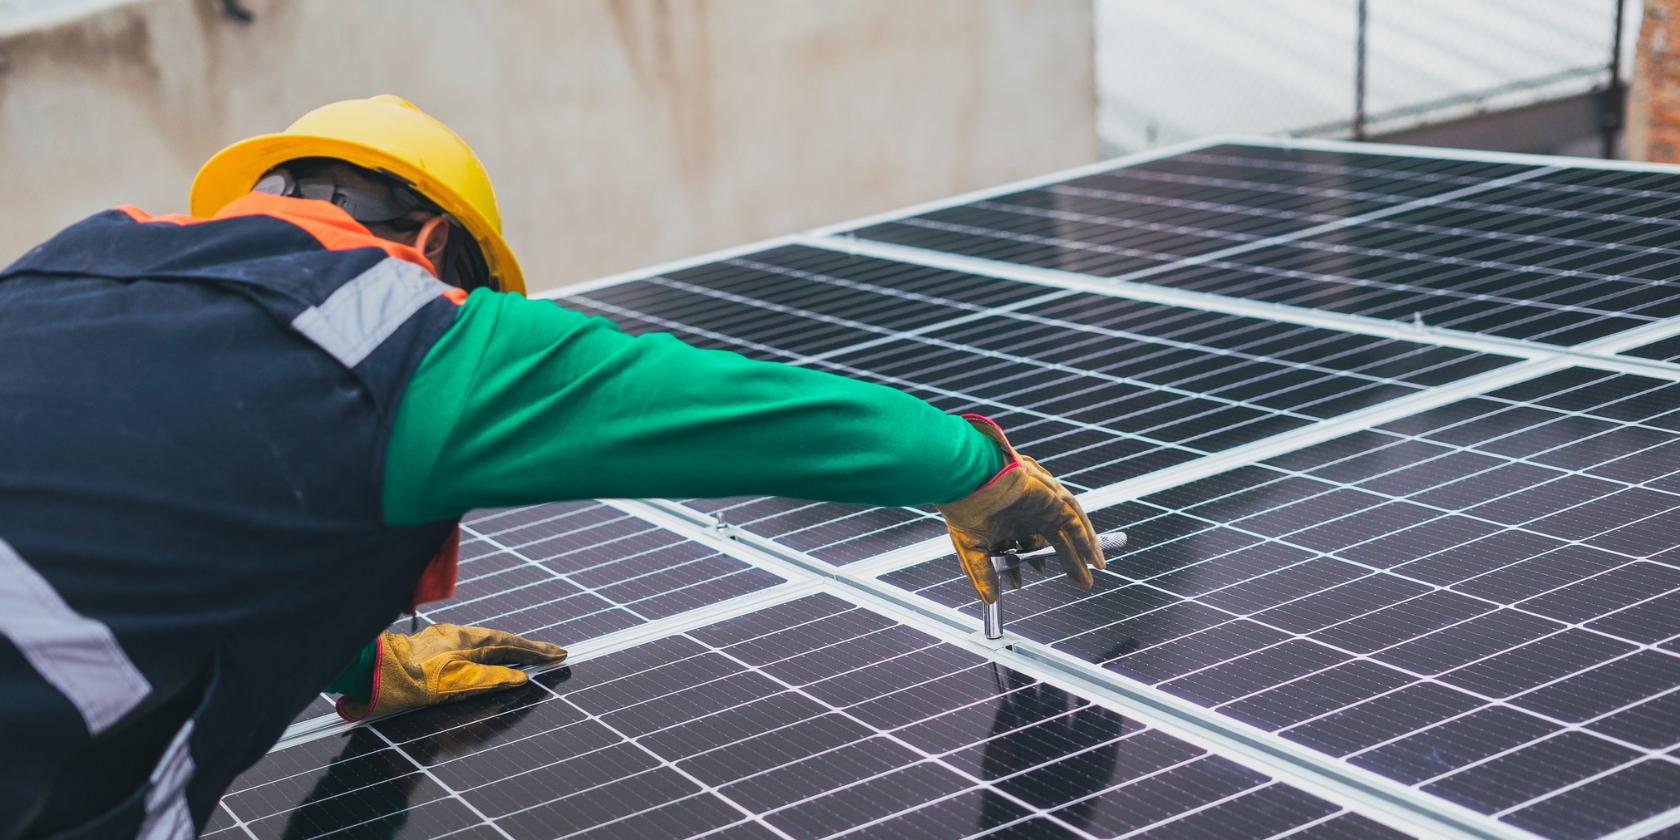 solar panel installation - Quanto costa installare i pannelli solari?